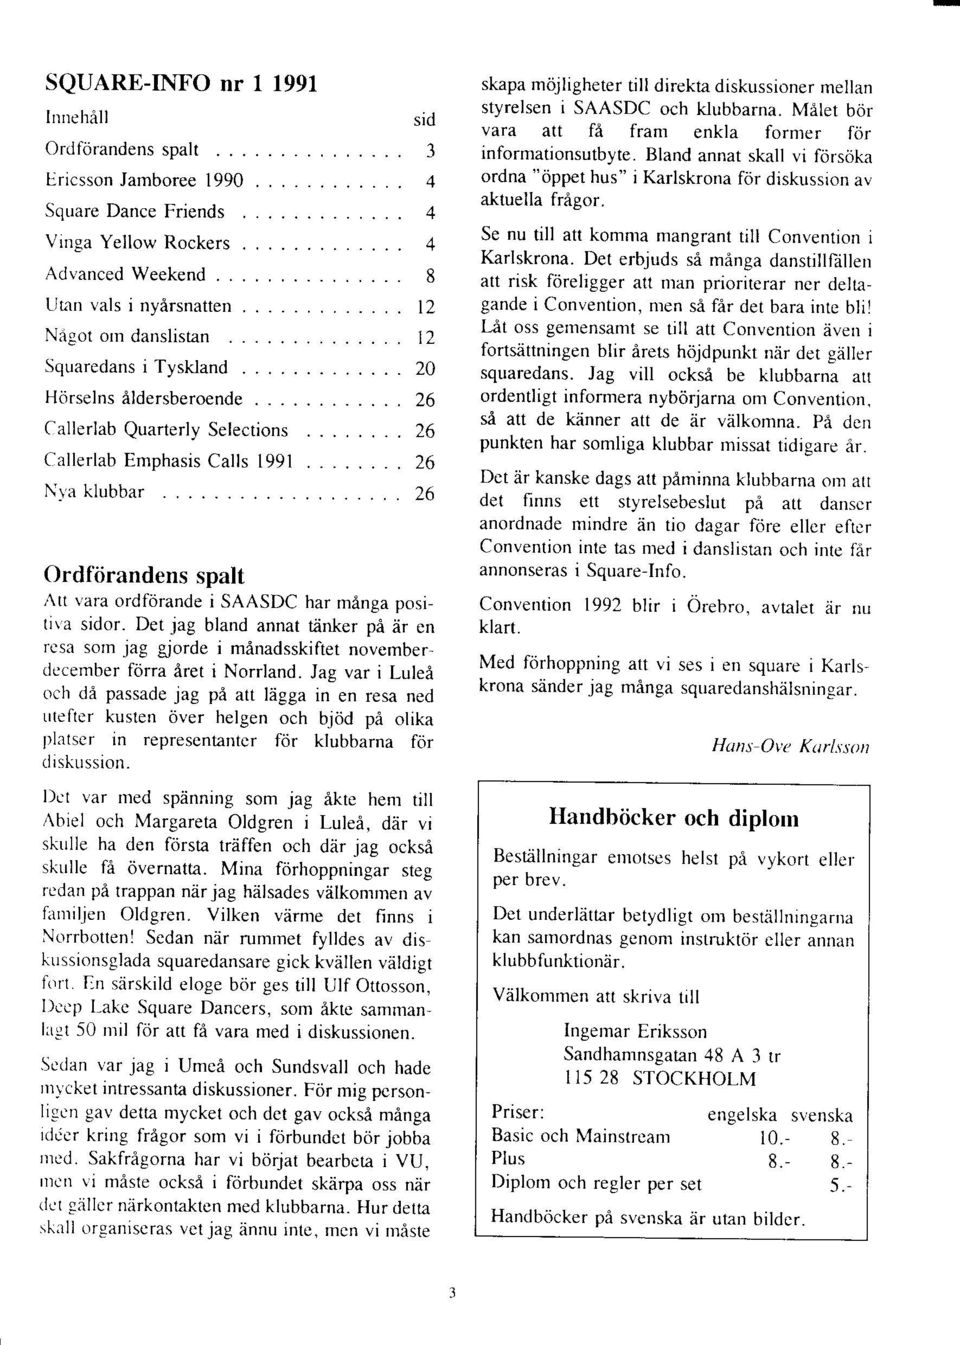 Emphasis Calls 1991 Nt'a klubbar sid 3 4 4 4 8 t2 t2 20 26 26 26 26 Ordfiirandens spalt Att vara ordforande i SAASDC har manga positiva sidor.